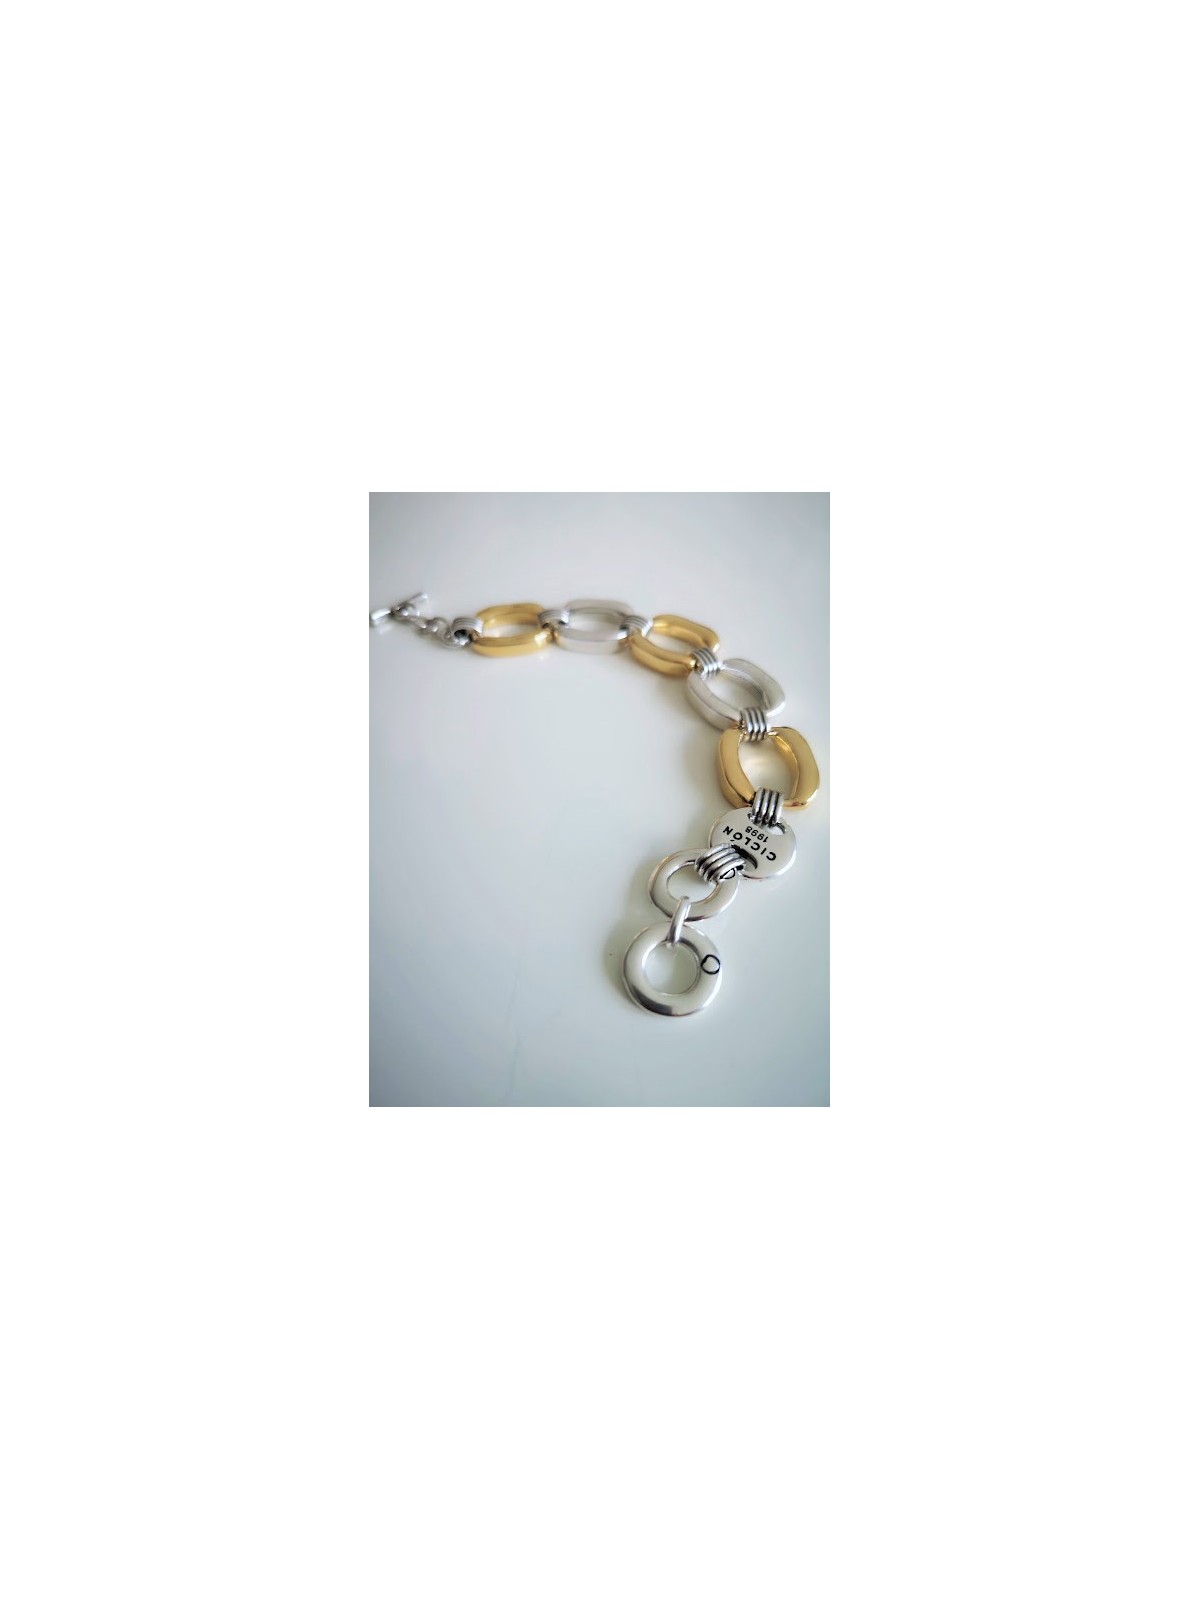 Bracelet plaqué argent et or maillons rectangulaires l 2 vue de haut l Tilleulmenthe mode boutique de vêtements femme en ligne